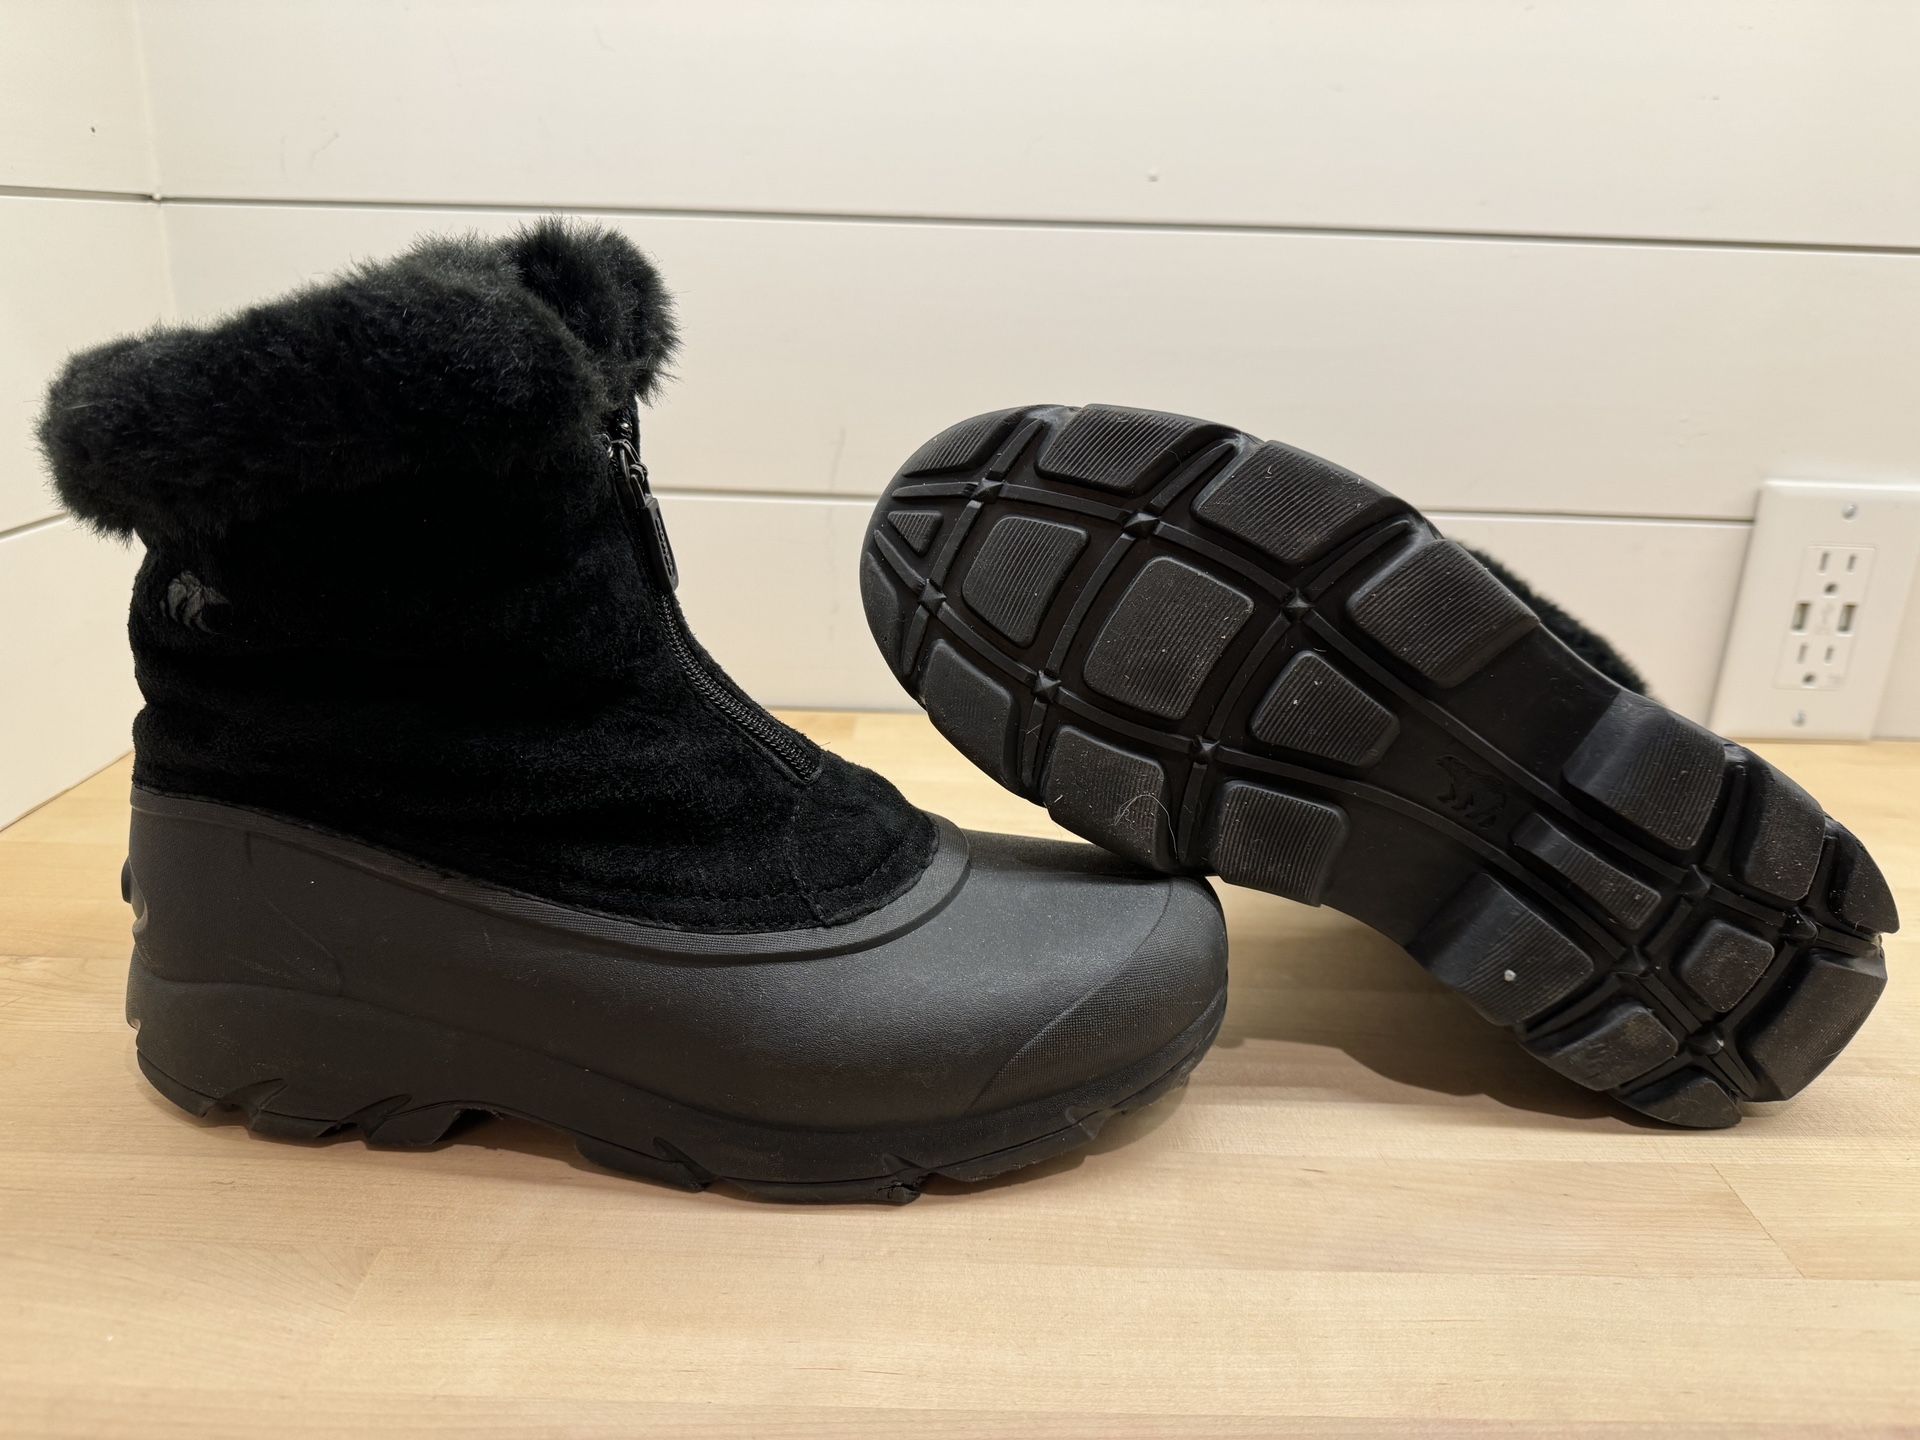 Women’s 9 Sorel Waterproof Snow Boots 